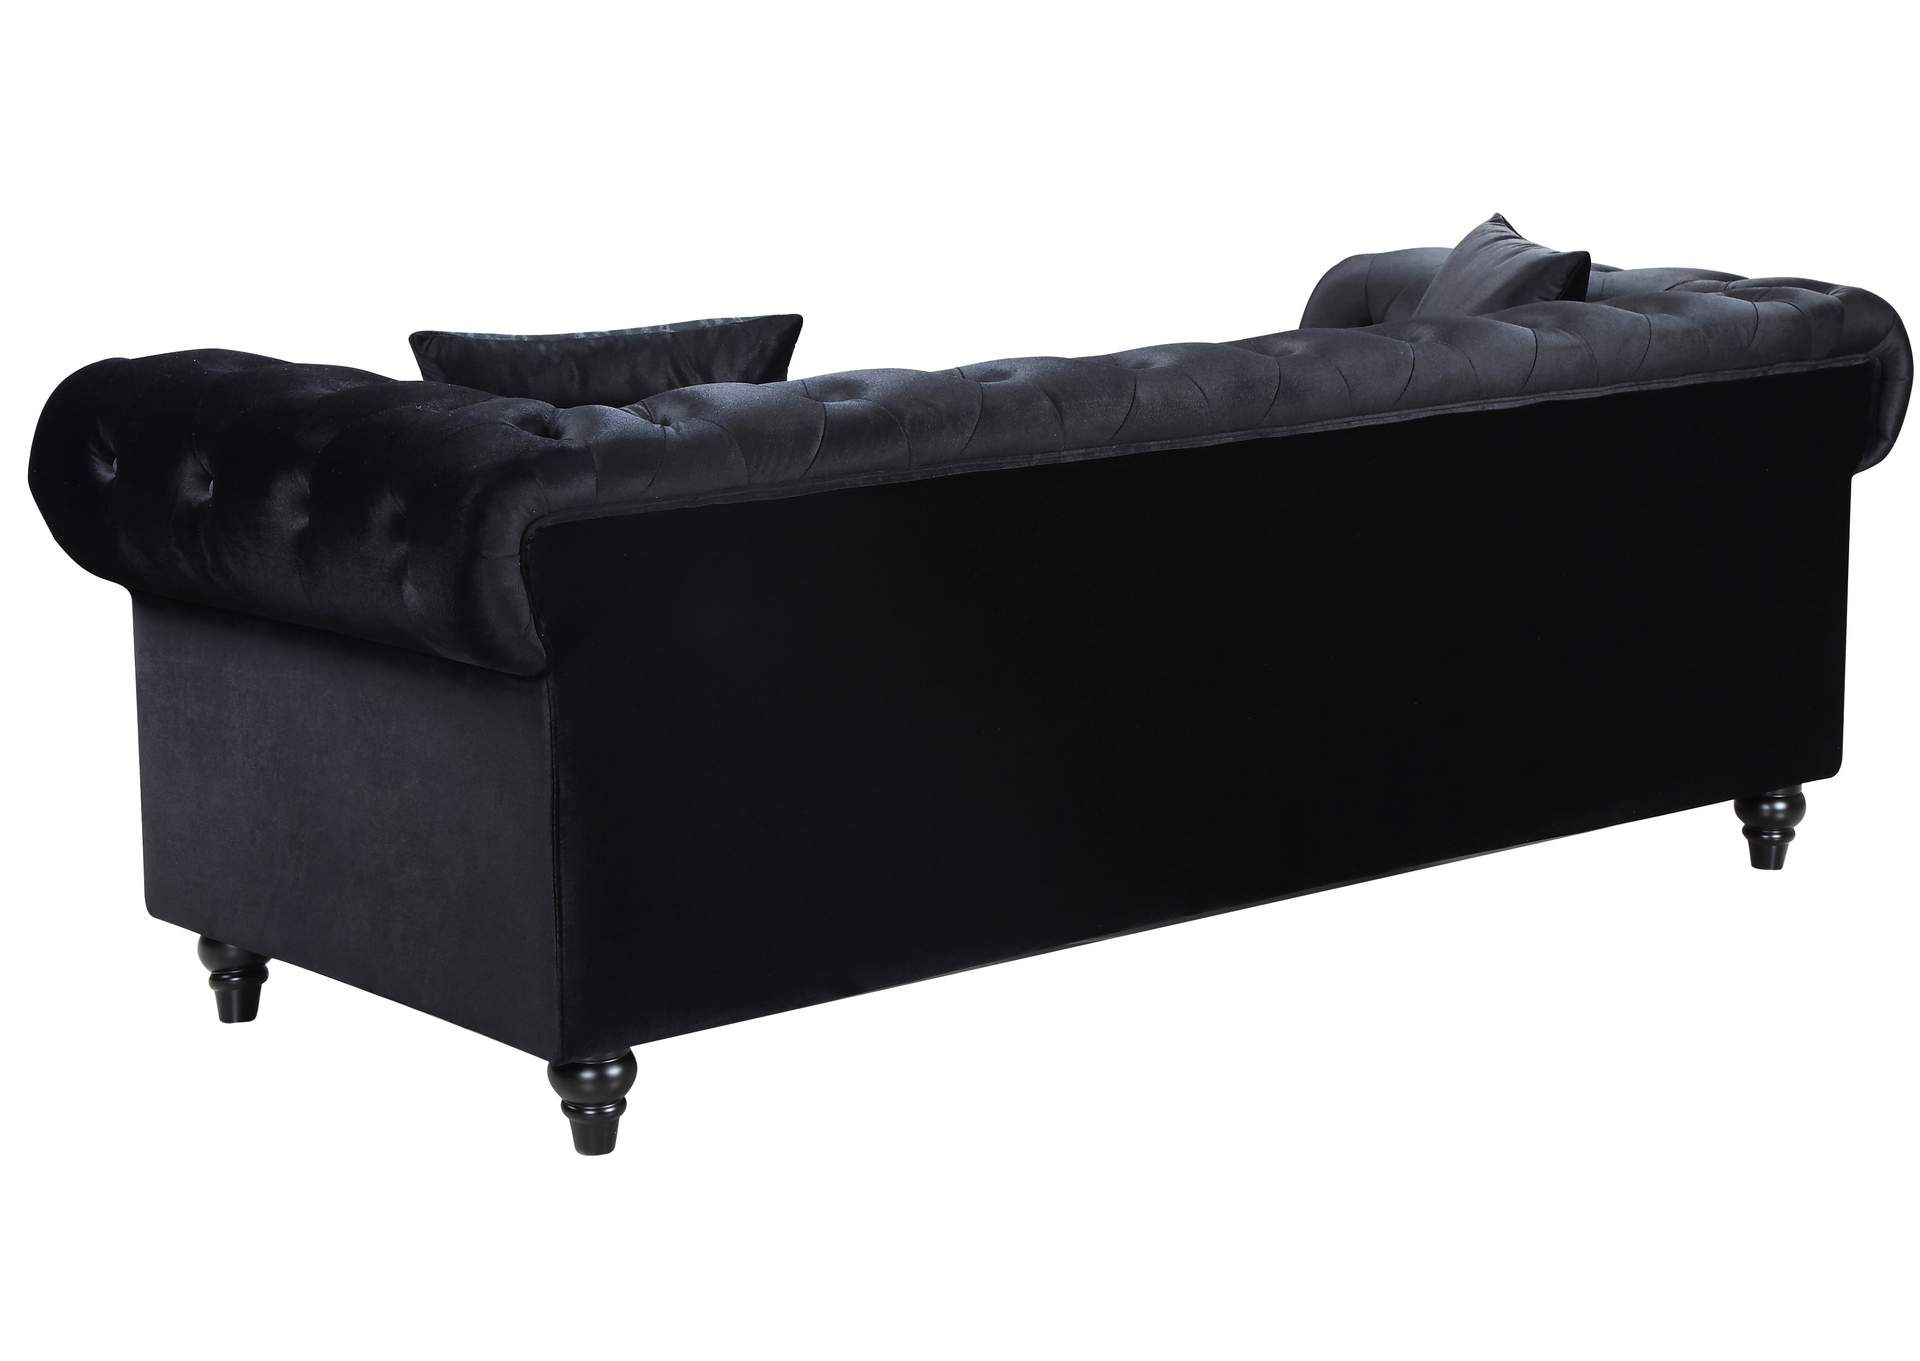 Chesterfield Black Velvet Sofa Best Buy Furniture And Mattress For Black Velvet Sofas (Gallery 15 of 20)